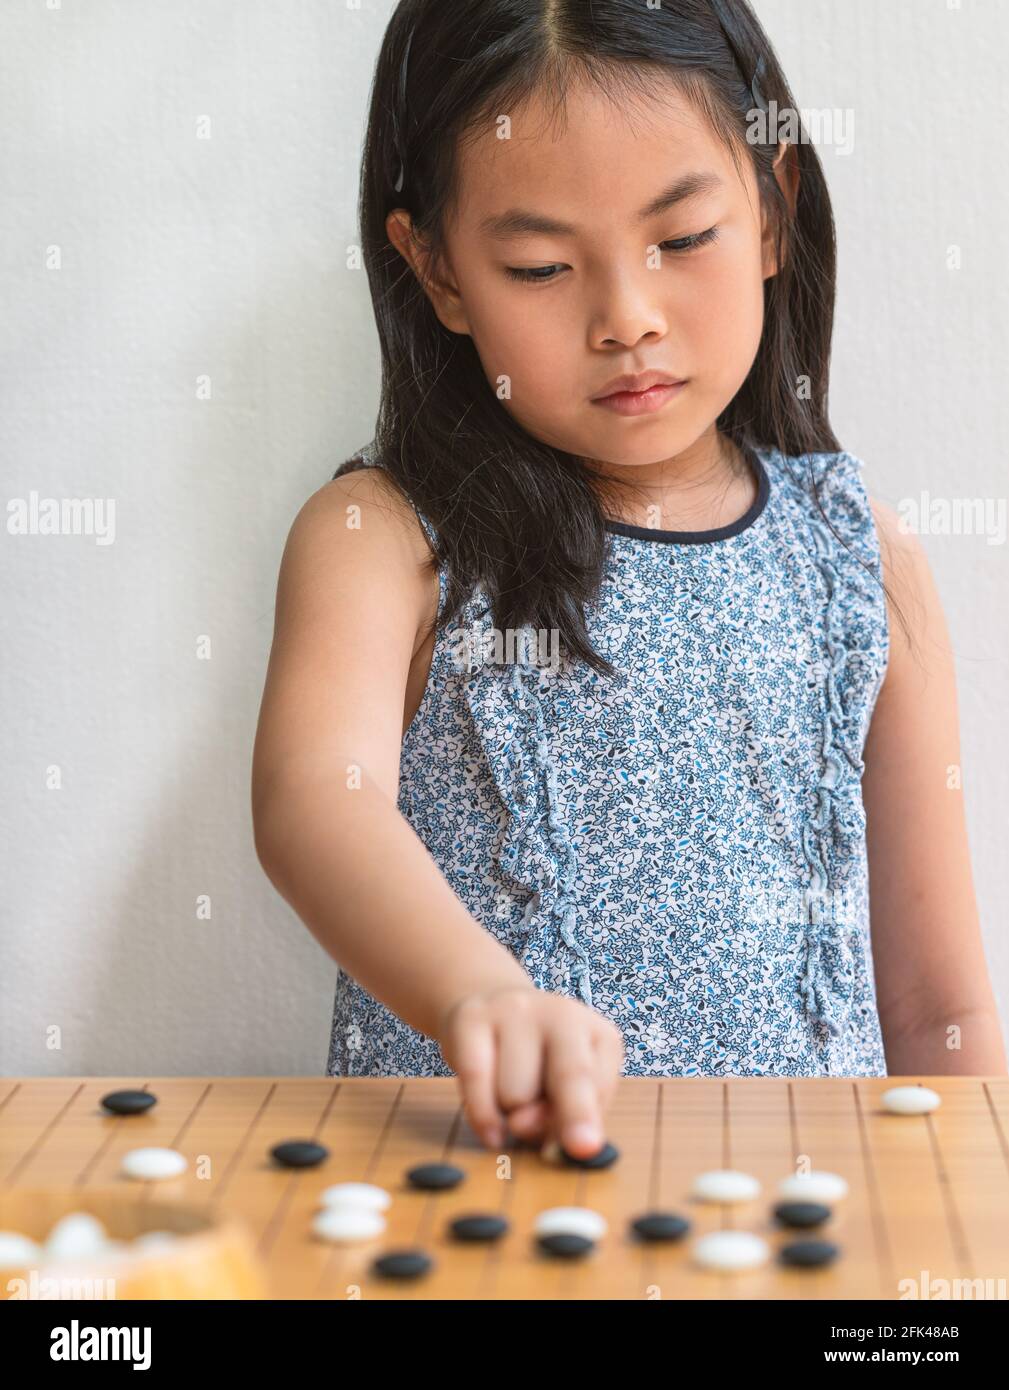 Ritratto Asian bambina ragazza gioca Go, il gioco da tavolo giapponese o  cinese, mettere a fuoco sul gioco da tavolo, parete bianca, immagine  verticale Foto stock - Alamy